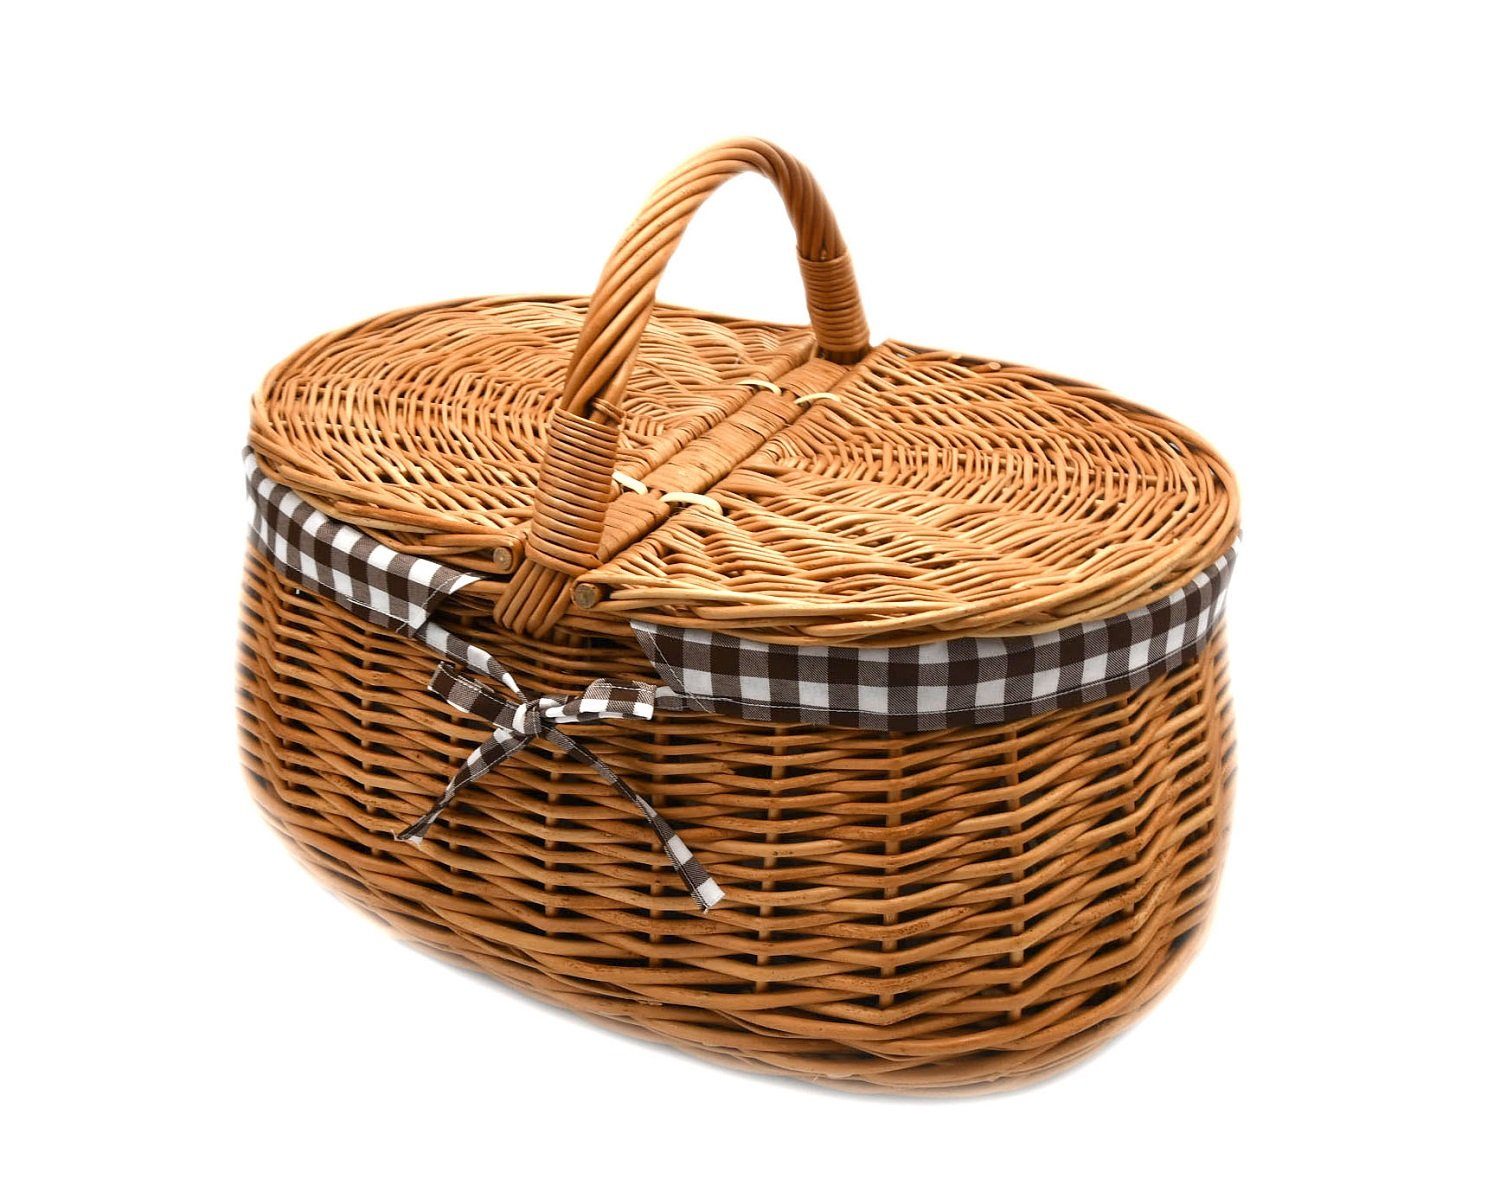 K1-030-SBRW Picknickkorb Einkaufskorb mit Tragekorb Stabiler MyBer® Weide braun mit Stoffeinlage Weidenkorb geflochten aus Deckeln 2 Korb